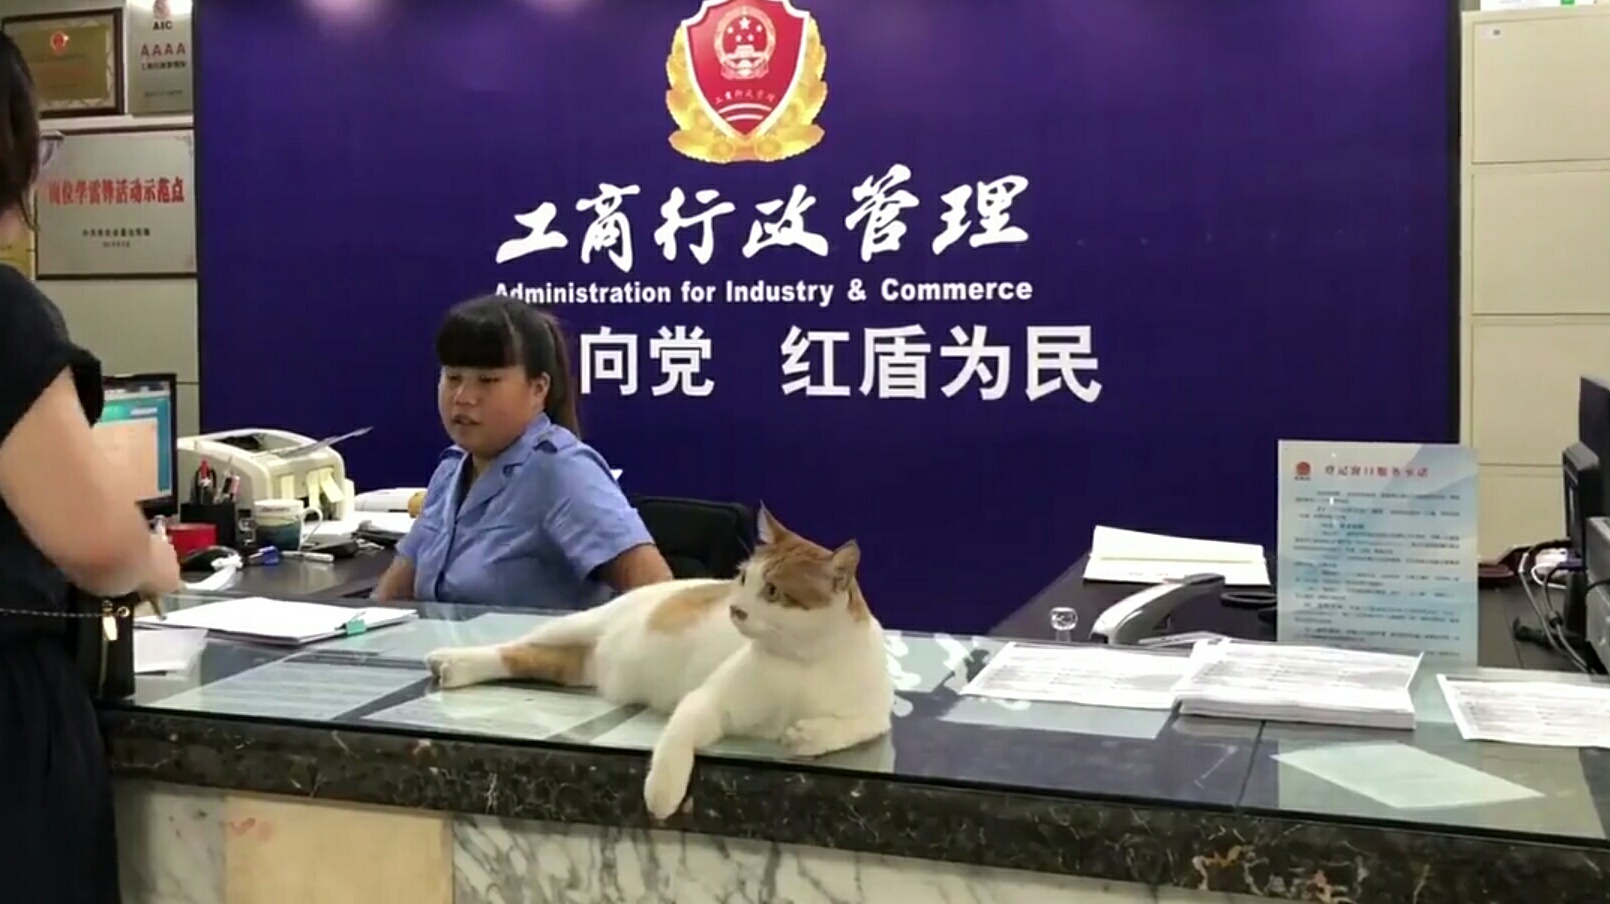 工商所将一只猫载入员工手册 职位“群众调解员”